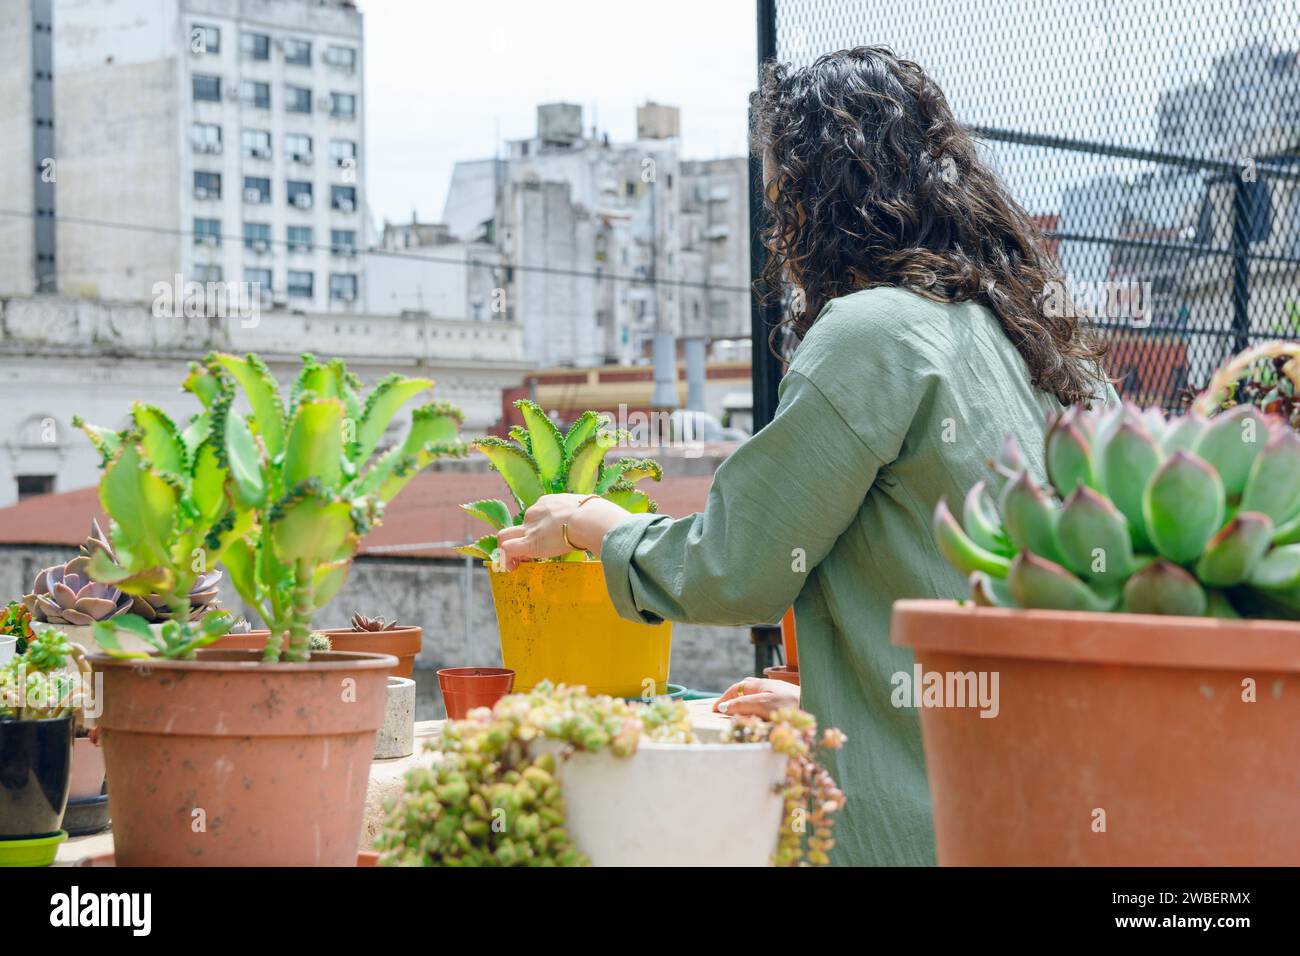 Rückansicht einer jungen, nicht erkennbaren Latina-Frau mit Lockenwicklern, stehend, ihre Pflanzen auf der Terrasse anordnend, Blumen putzend und arrangierend. Erhaltung Co Stockfoto